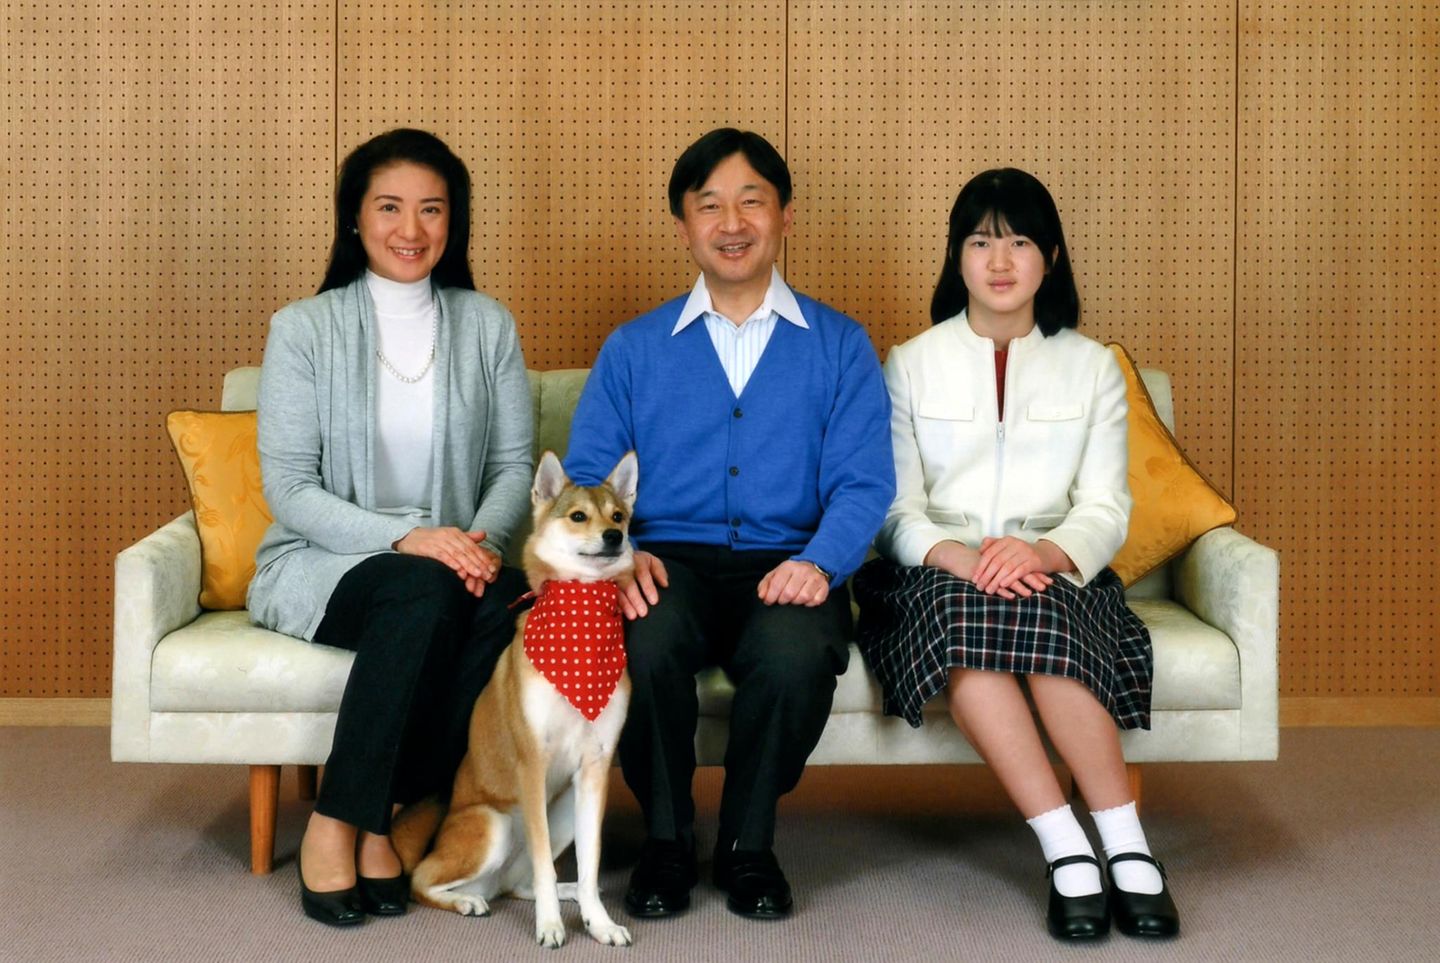 23. Februar 2014: Prinz Naruhito wird 54 Jahre alt. Gemeinsam mit Ehefrau Masako, Tochter Aiko und dem Familienhund hat der Kronprinz schon einige Tage zuvor für das traditionelle Geburtstagsbild posiert.